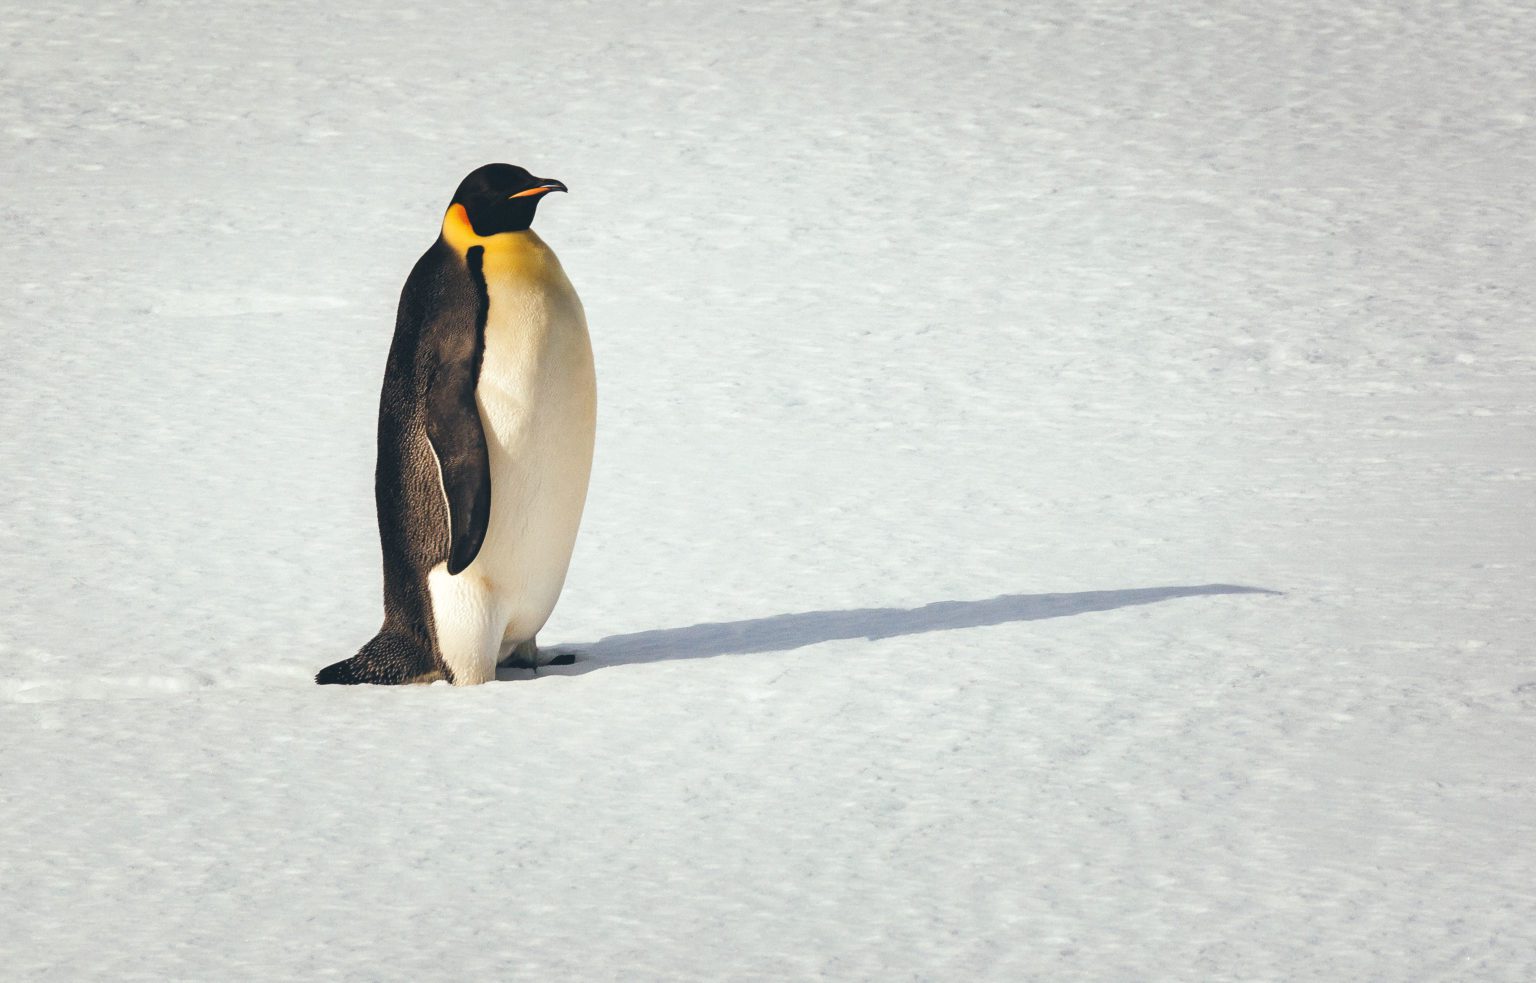 emperor penguin walking across the snow